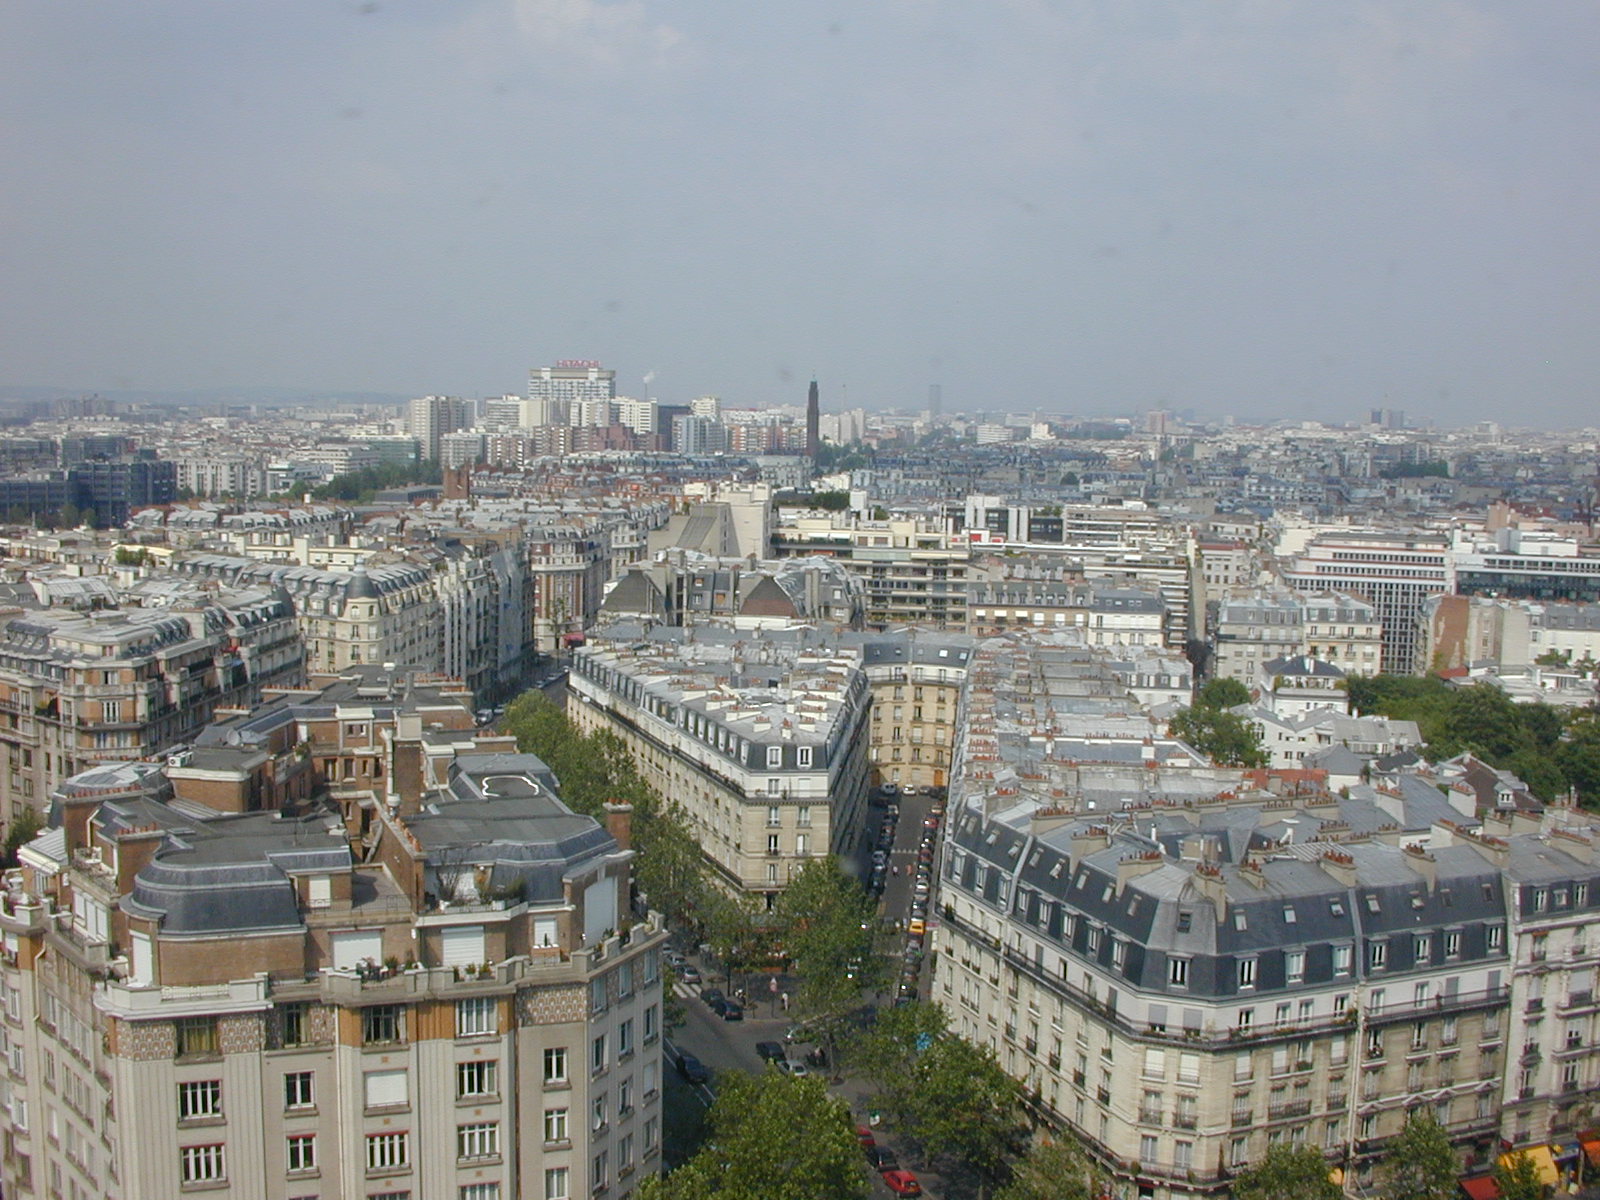 A picture of Paris ; Actual size=240 pixels wide